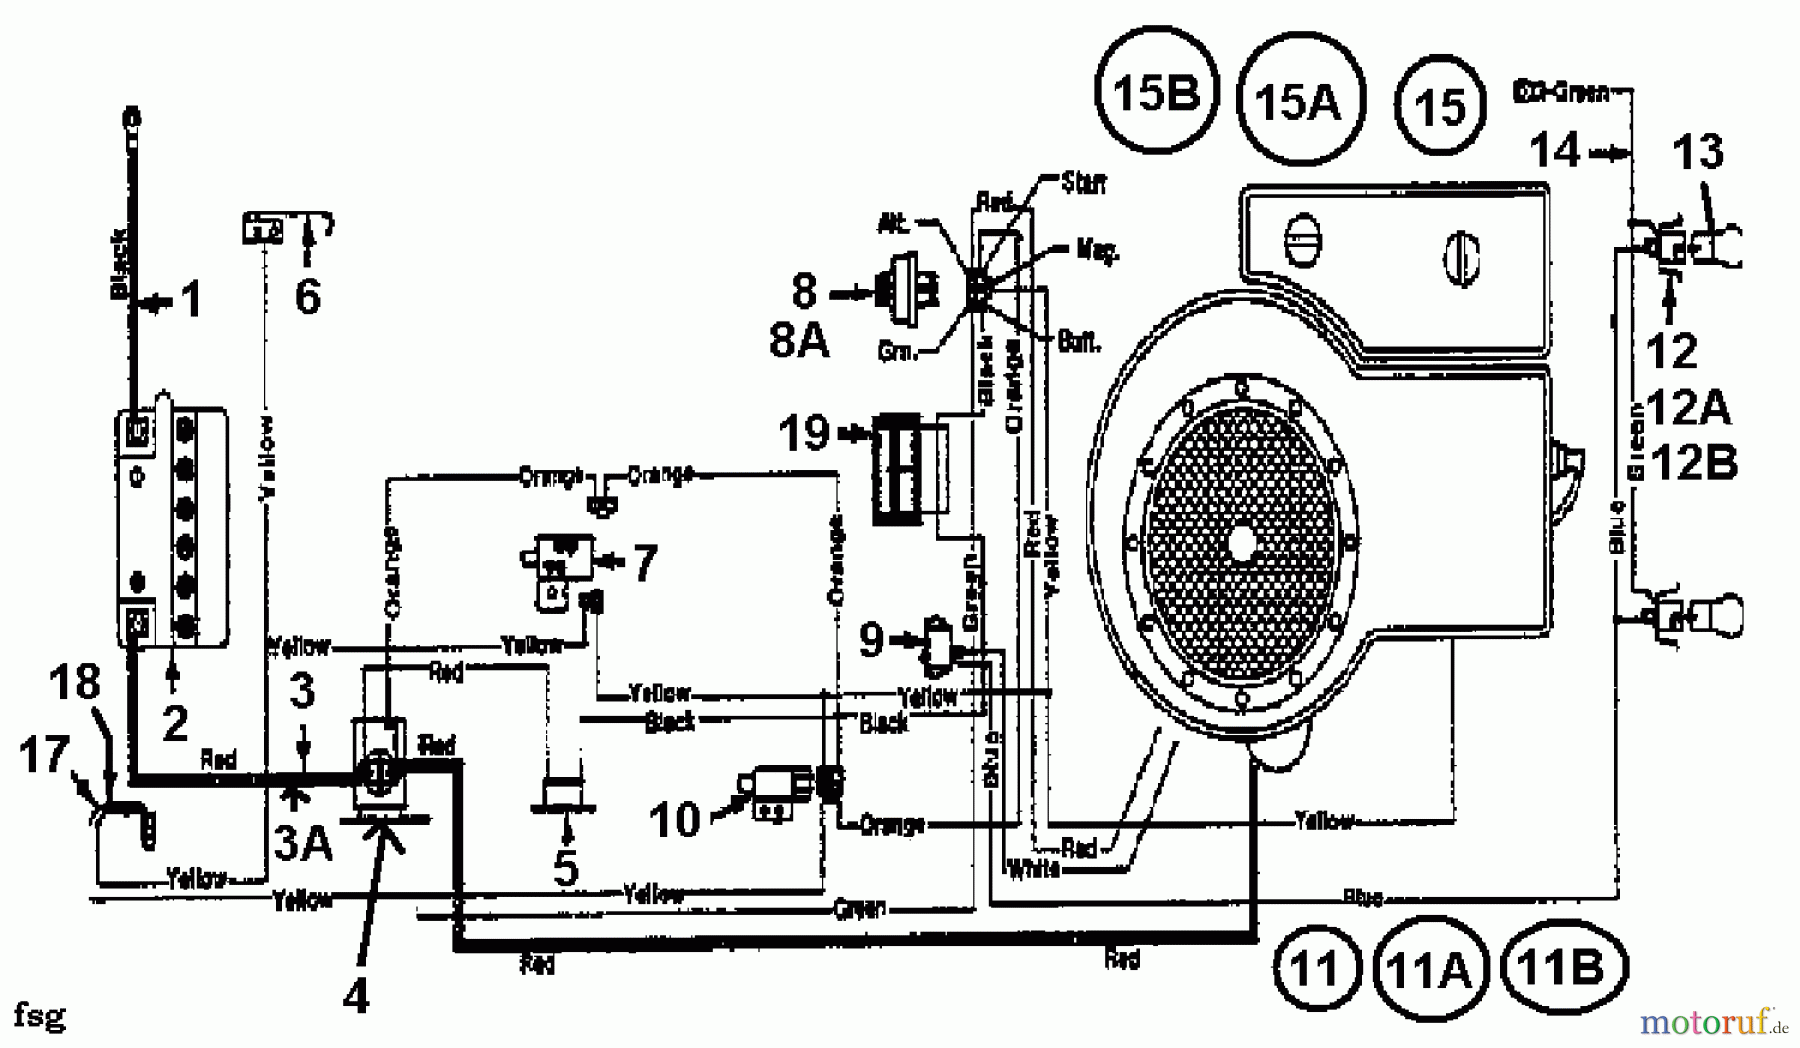  Florica Tracteurs de pelouse 12/91 133I470E638  (1993) Plan électrique cylindre simple